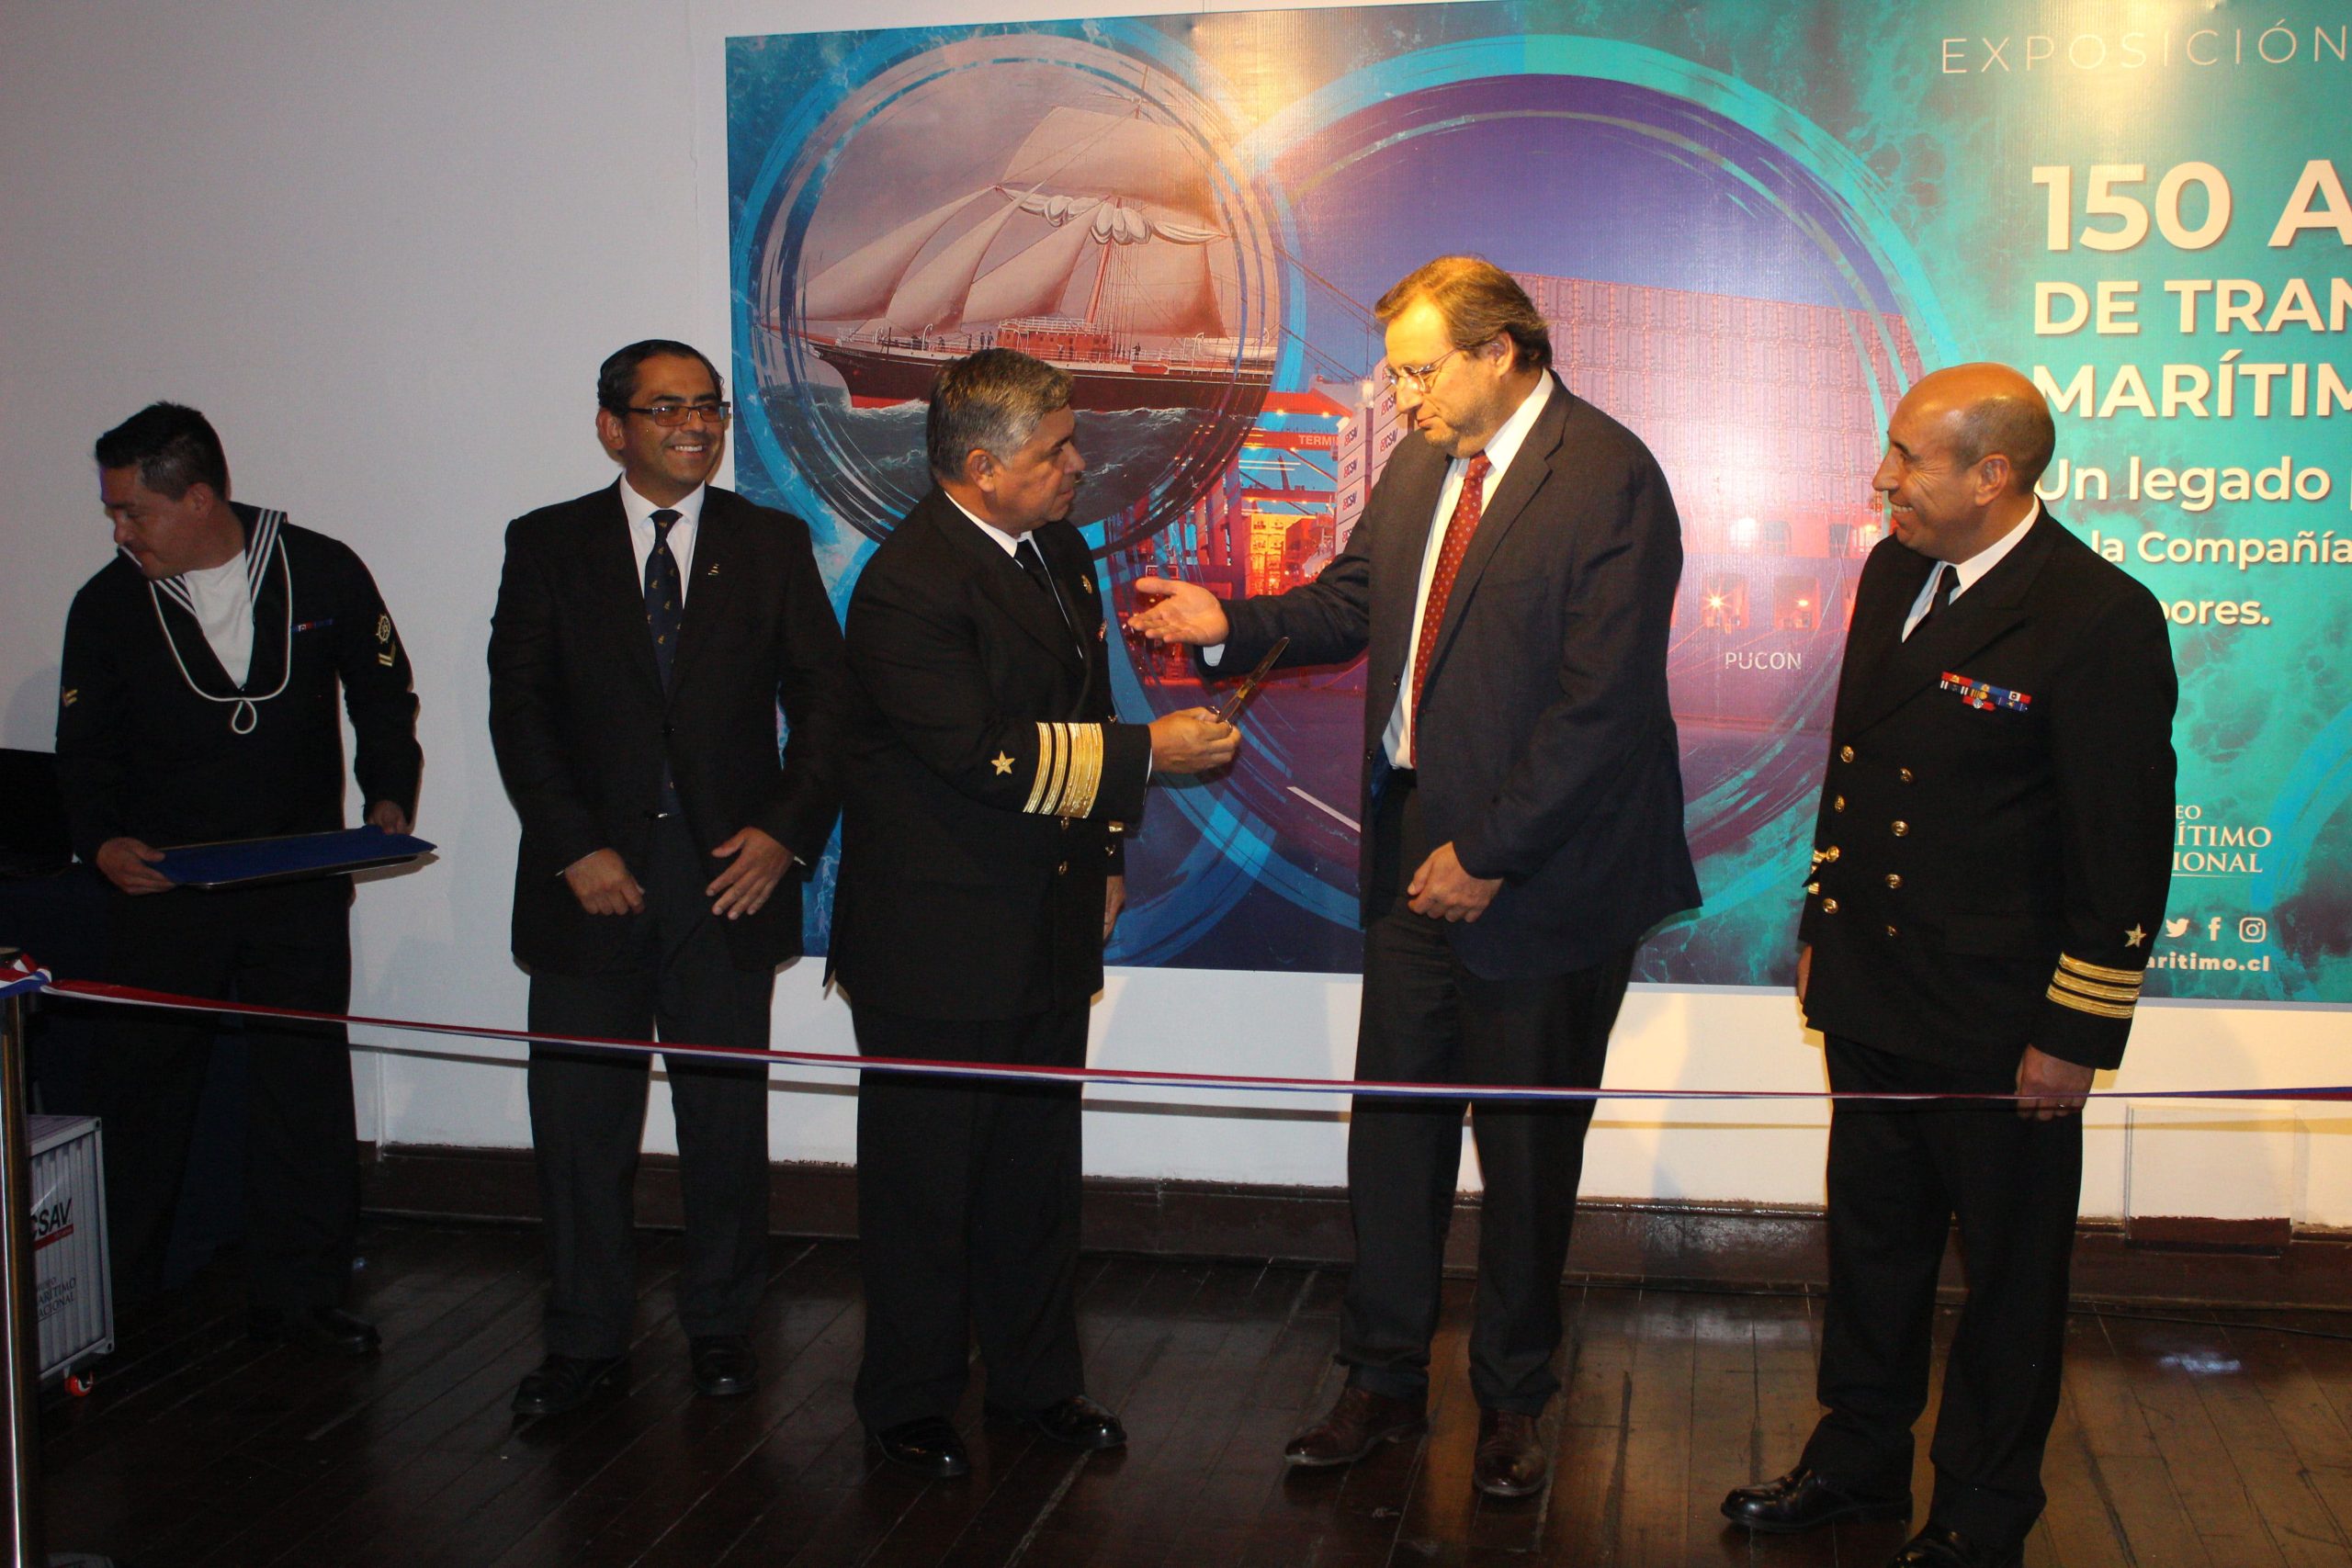 Museo Marítimo Nacional inauguró exposición sobre los 150 años de transporte marítimo